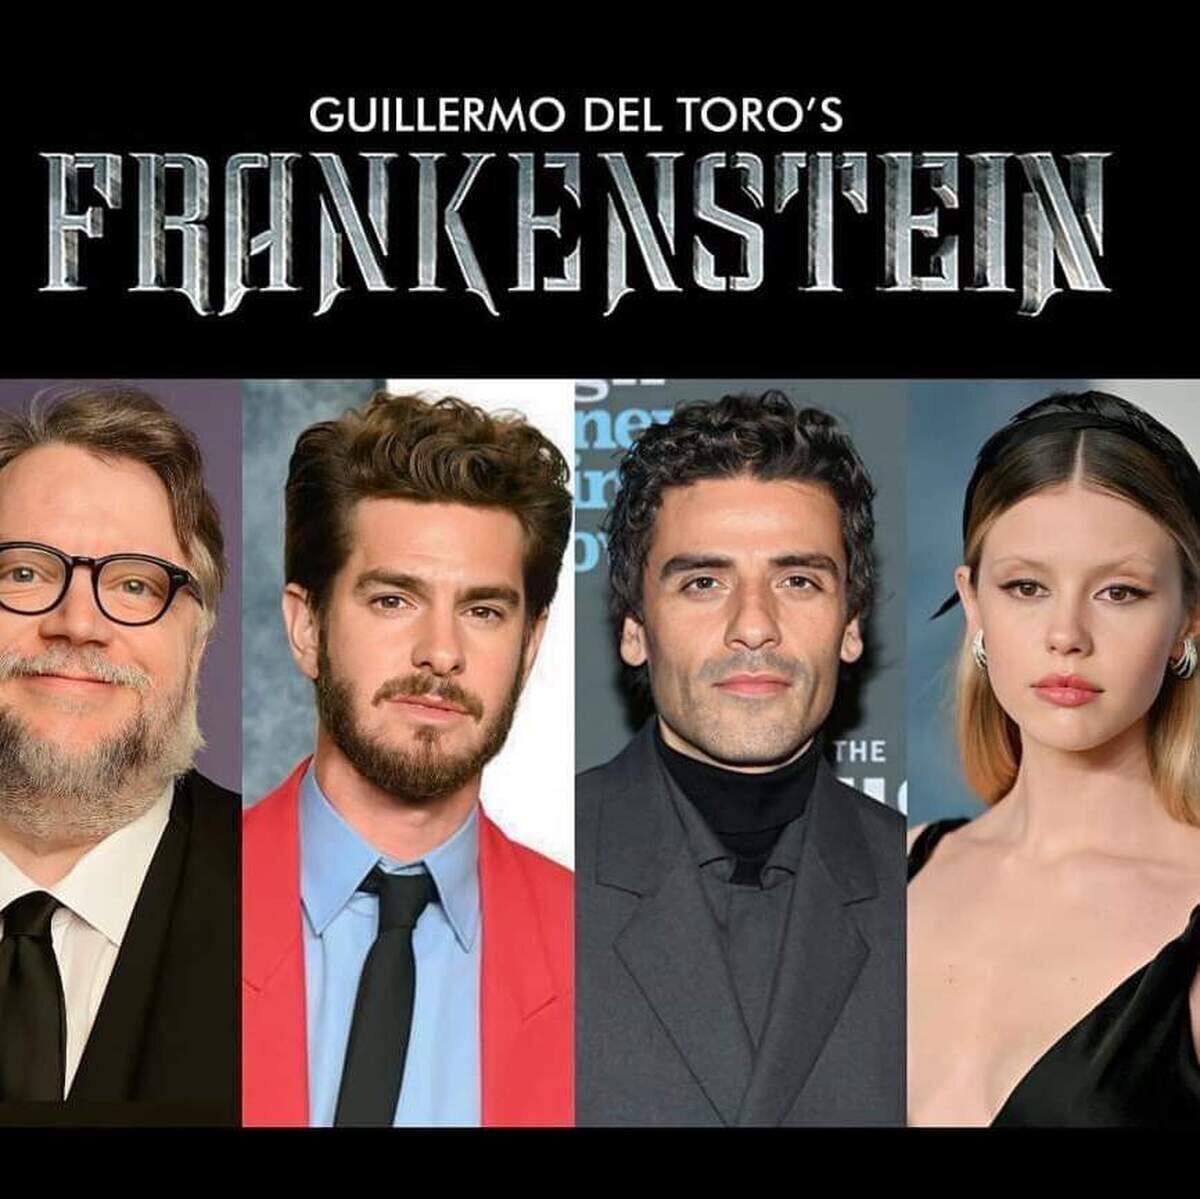 La versión de Frankenstein de Guillermo del Toro contará con Andrew Garfield, Oscar Isaac y Mia Goth como protagonistas